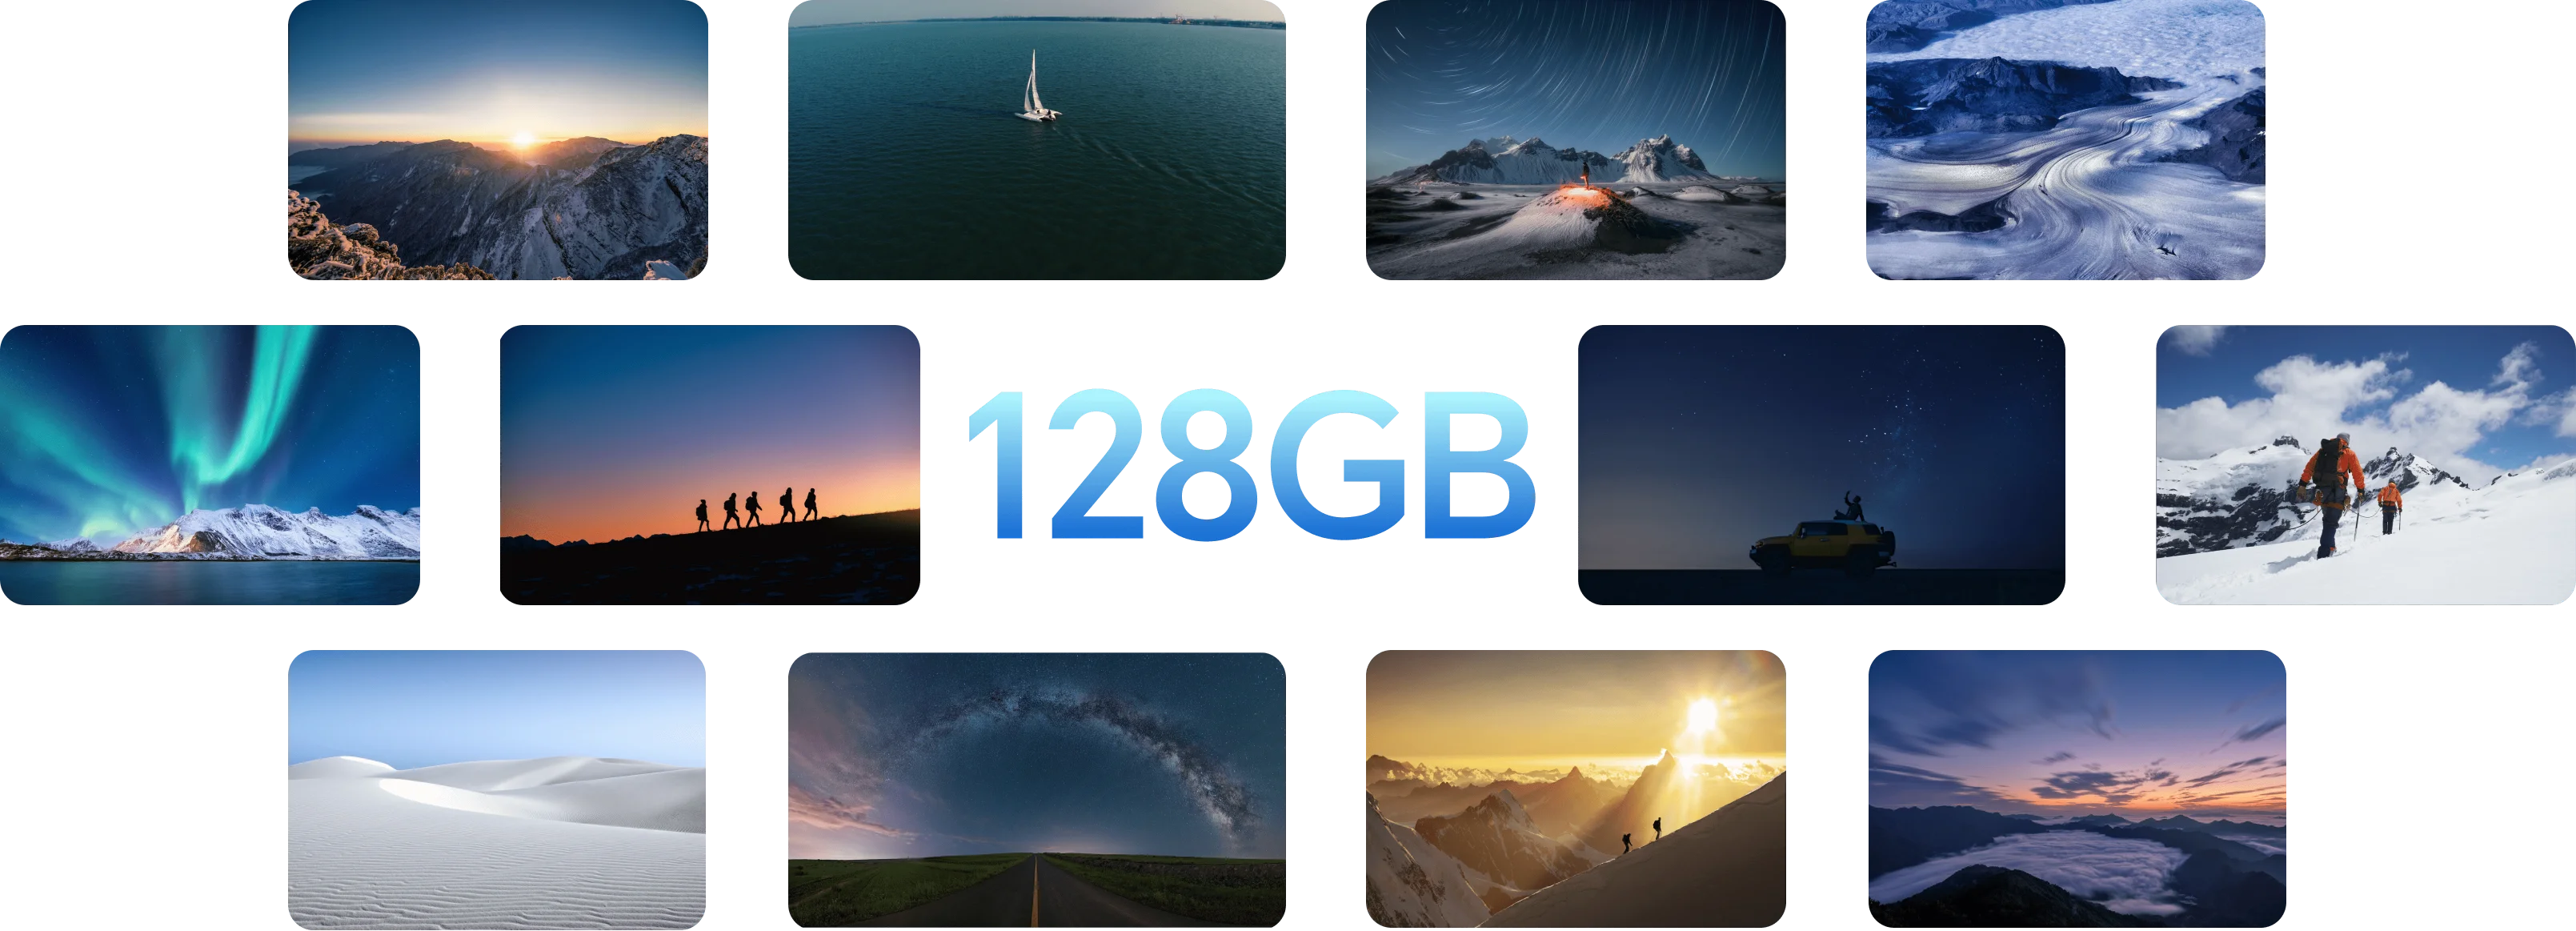 سعة كبيرة 128GB سعة تخزين كبيرة تسع المزيد من المرح .1